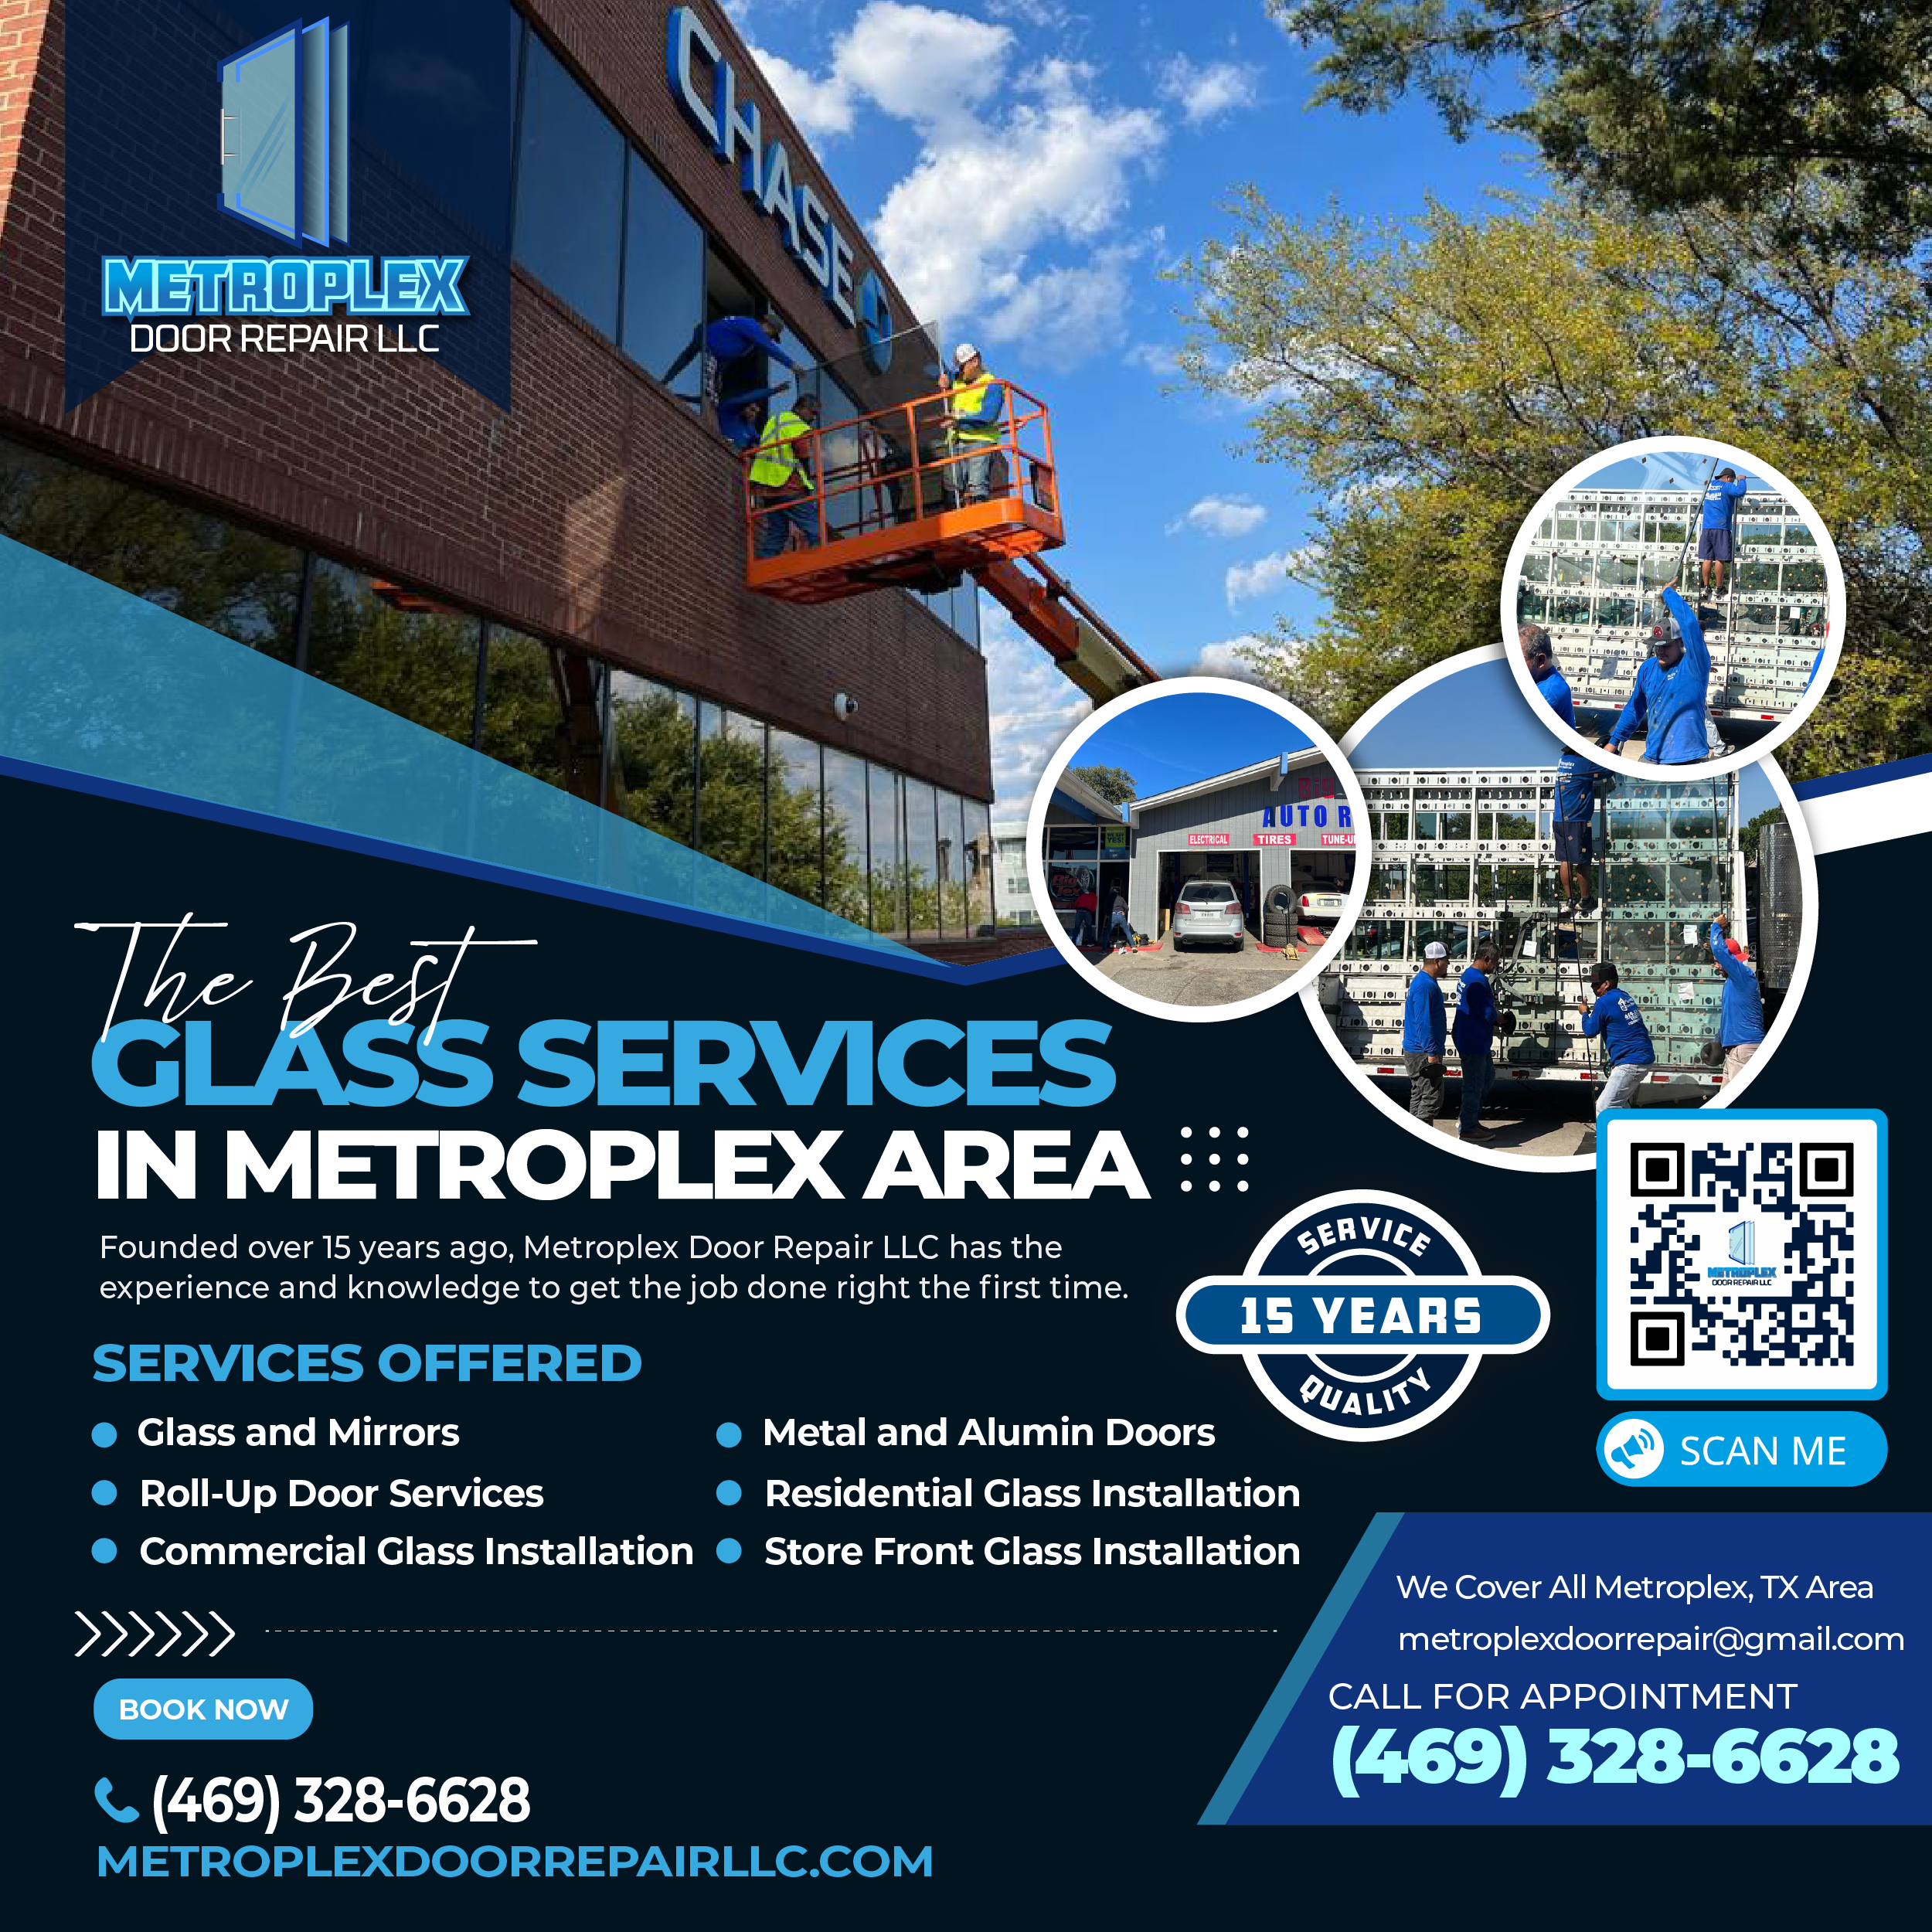 Metroplex Door Repair LLC - Flyer 1